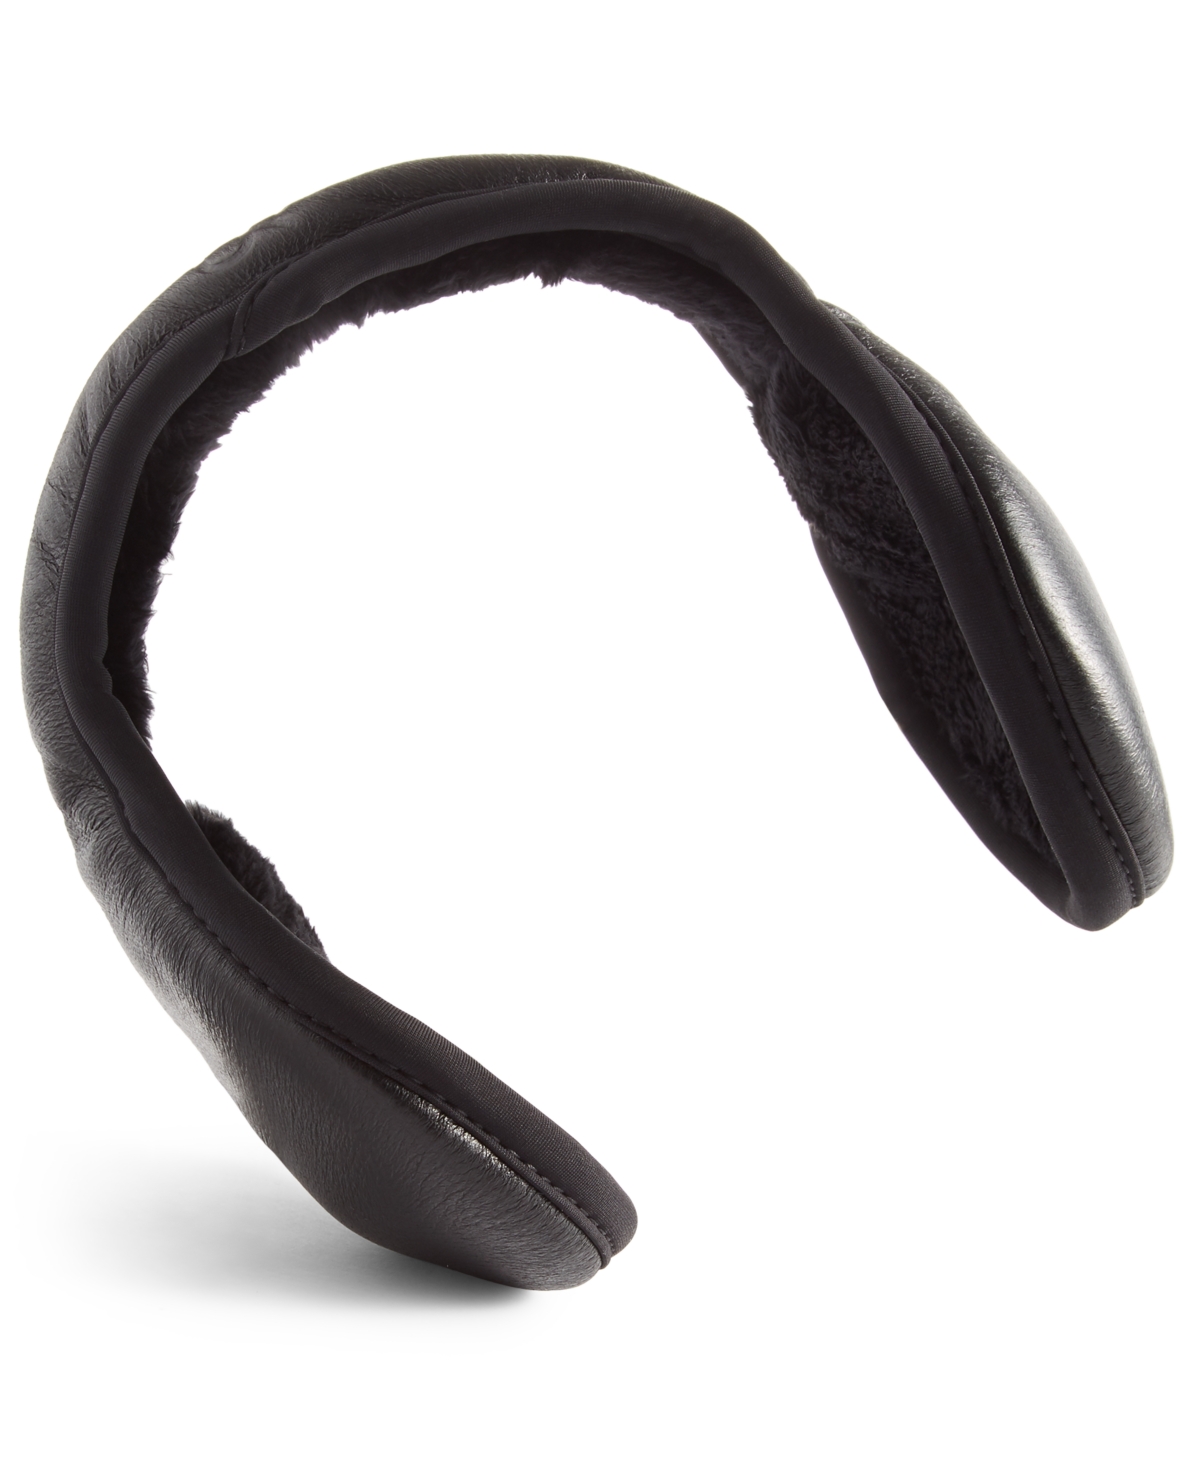 Men's Black Leather Ear Warmers - Black